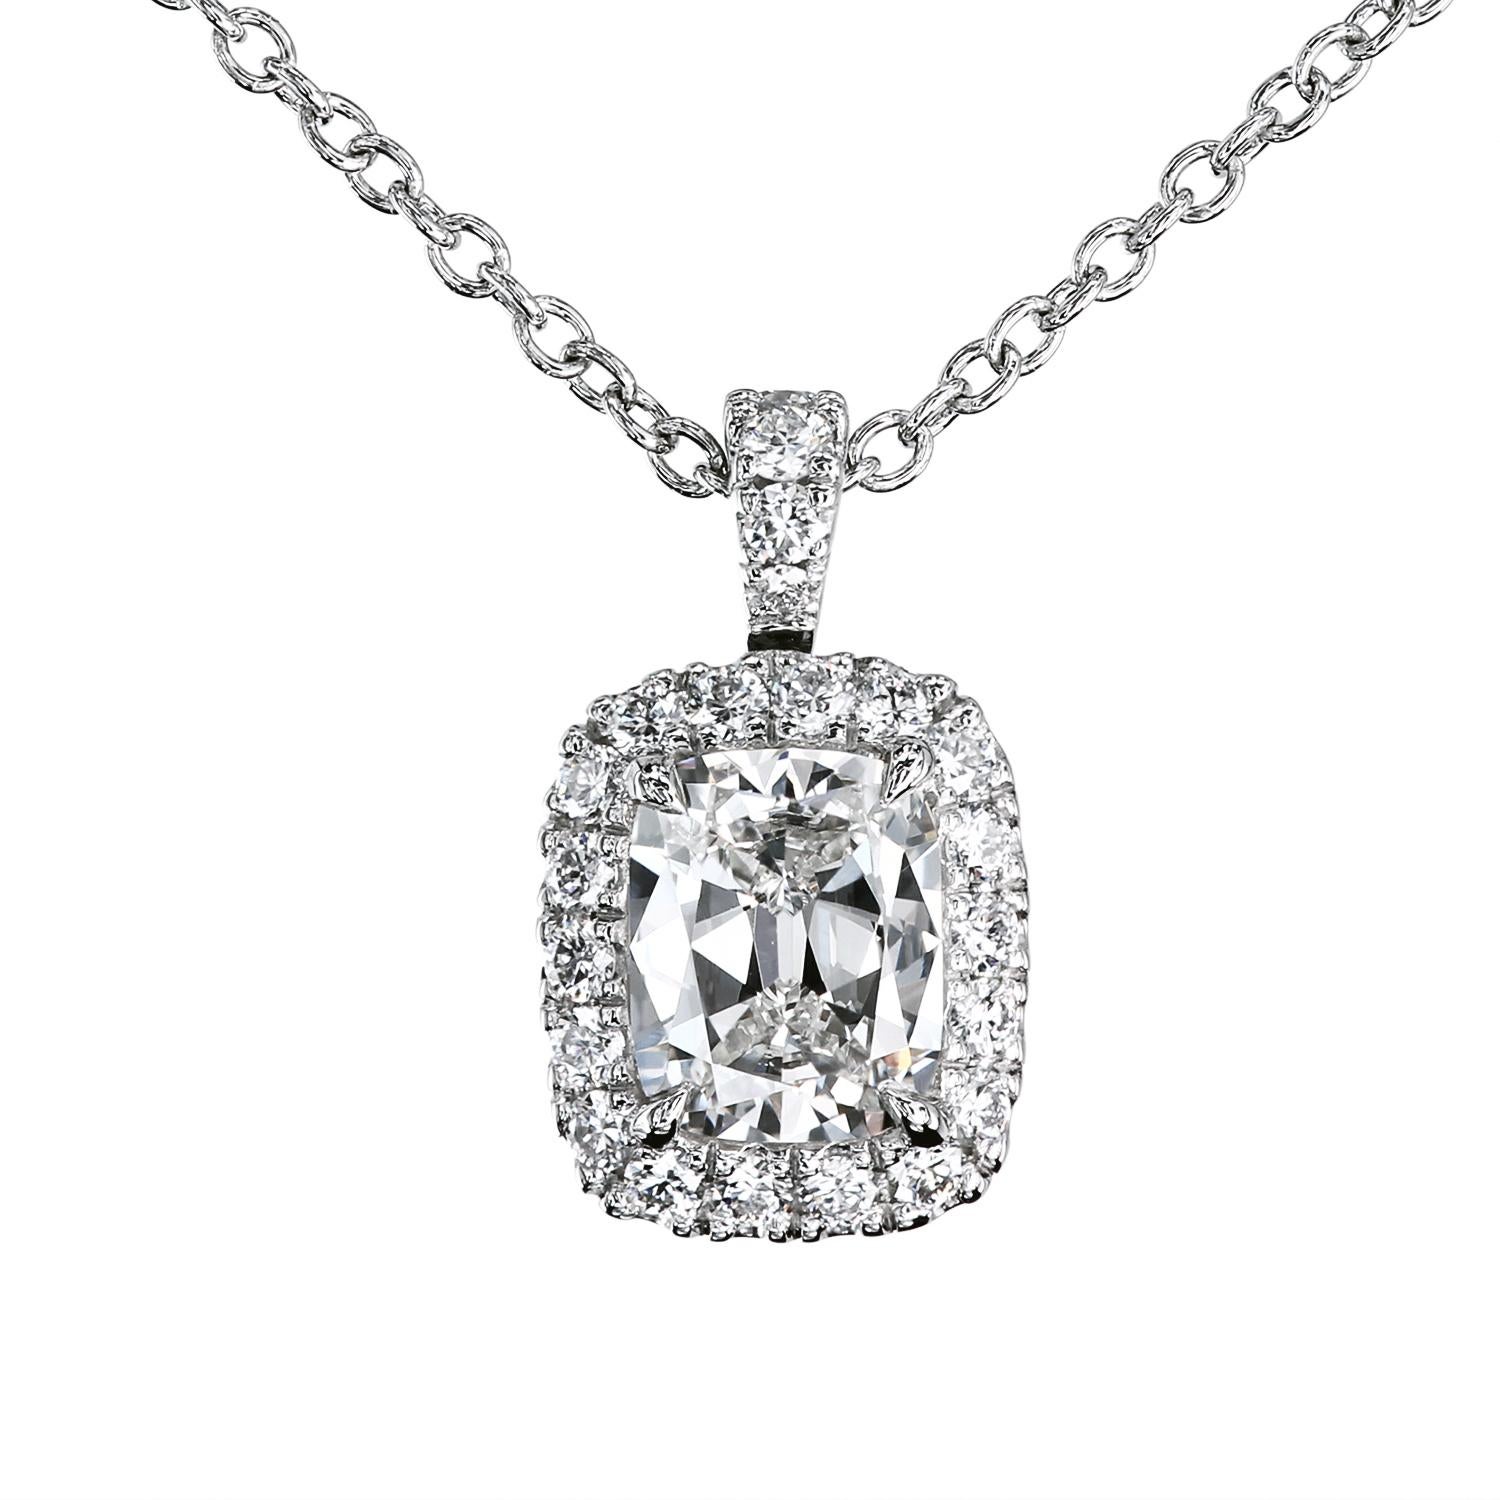 GIA-zertifizierter 0,70-Karat-D/SI1-Diamant Antiker Kissen-Diamant, umgeben von Mikro-Pflaster-Diamanten in einem zarten, in der Bank gefertigten Anhänger von Leon Mege.
GIA-Zertifikat #2165647209
Der Anhänger verfügt über einen klappbaren Bügel,